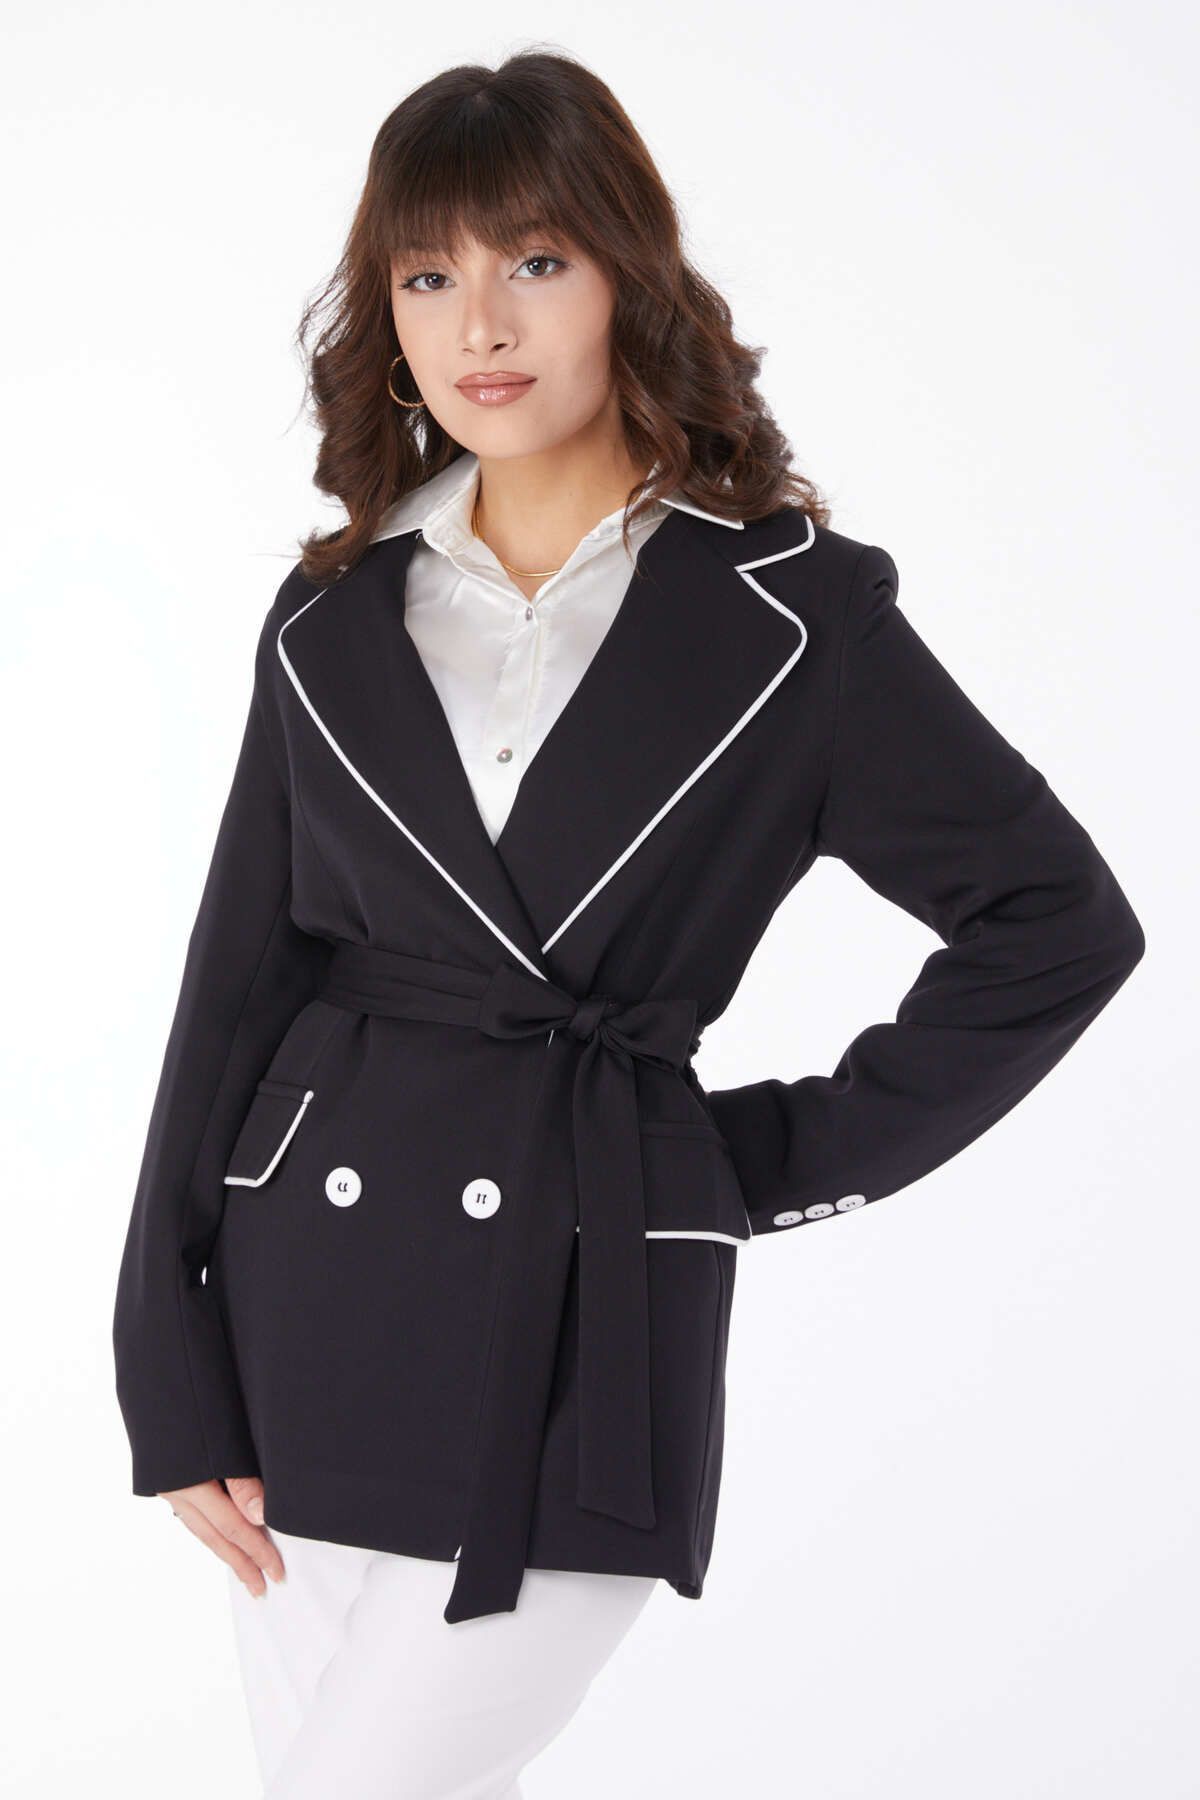 TOFİSA Düz Ceket Yaka Kadın Siyah Kuşaklı Ceket - 25032